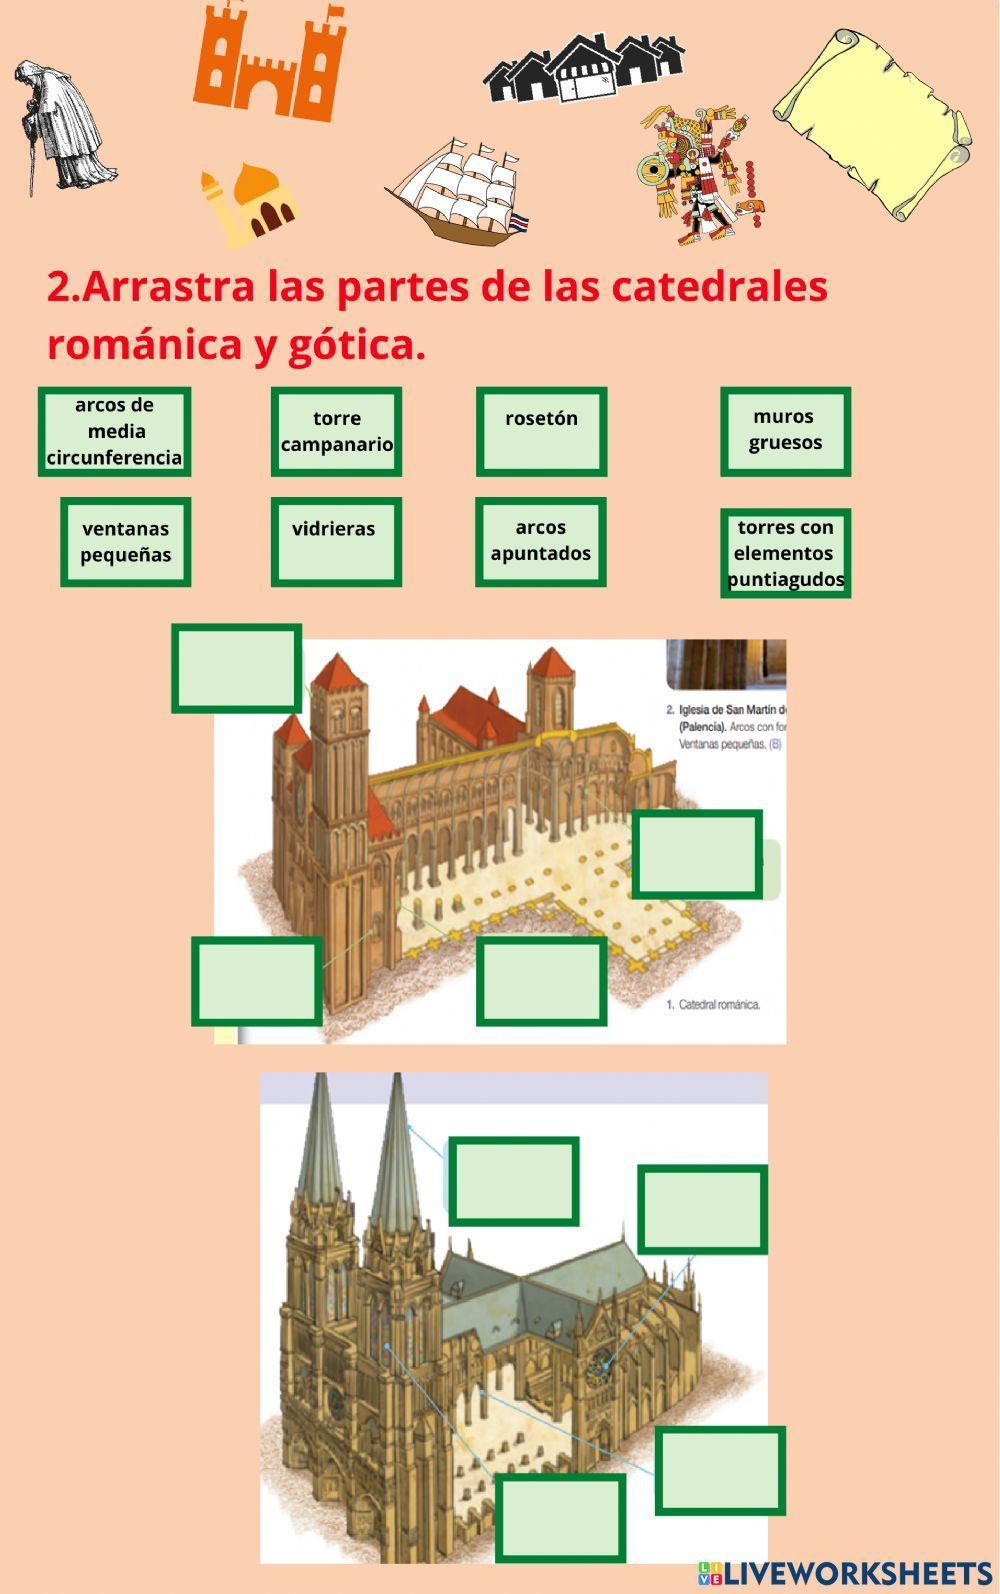 El arte románico y gótico